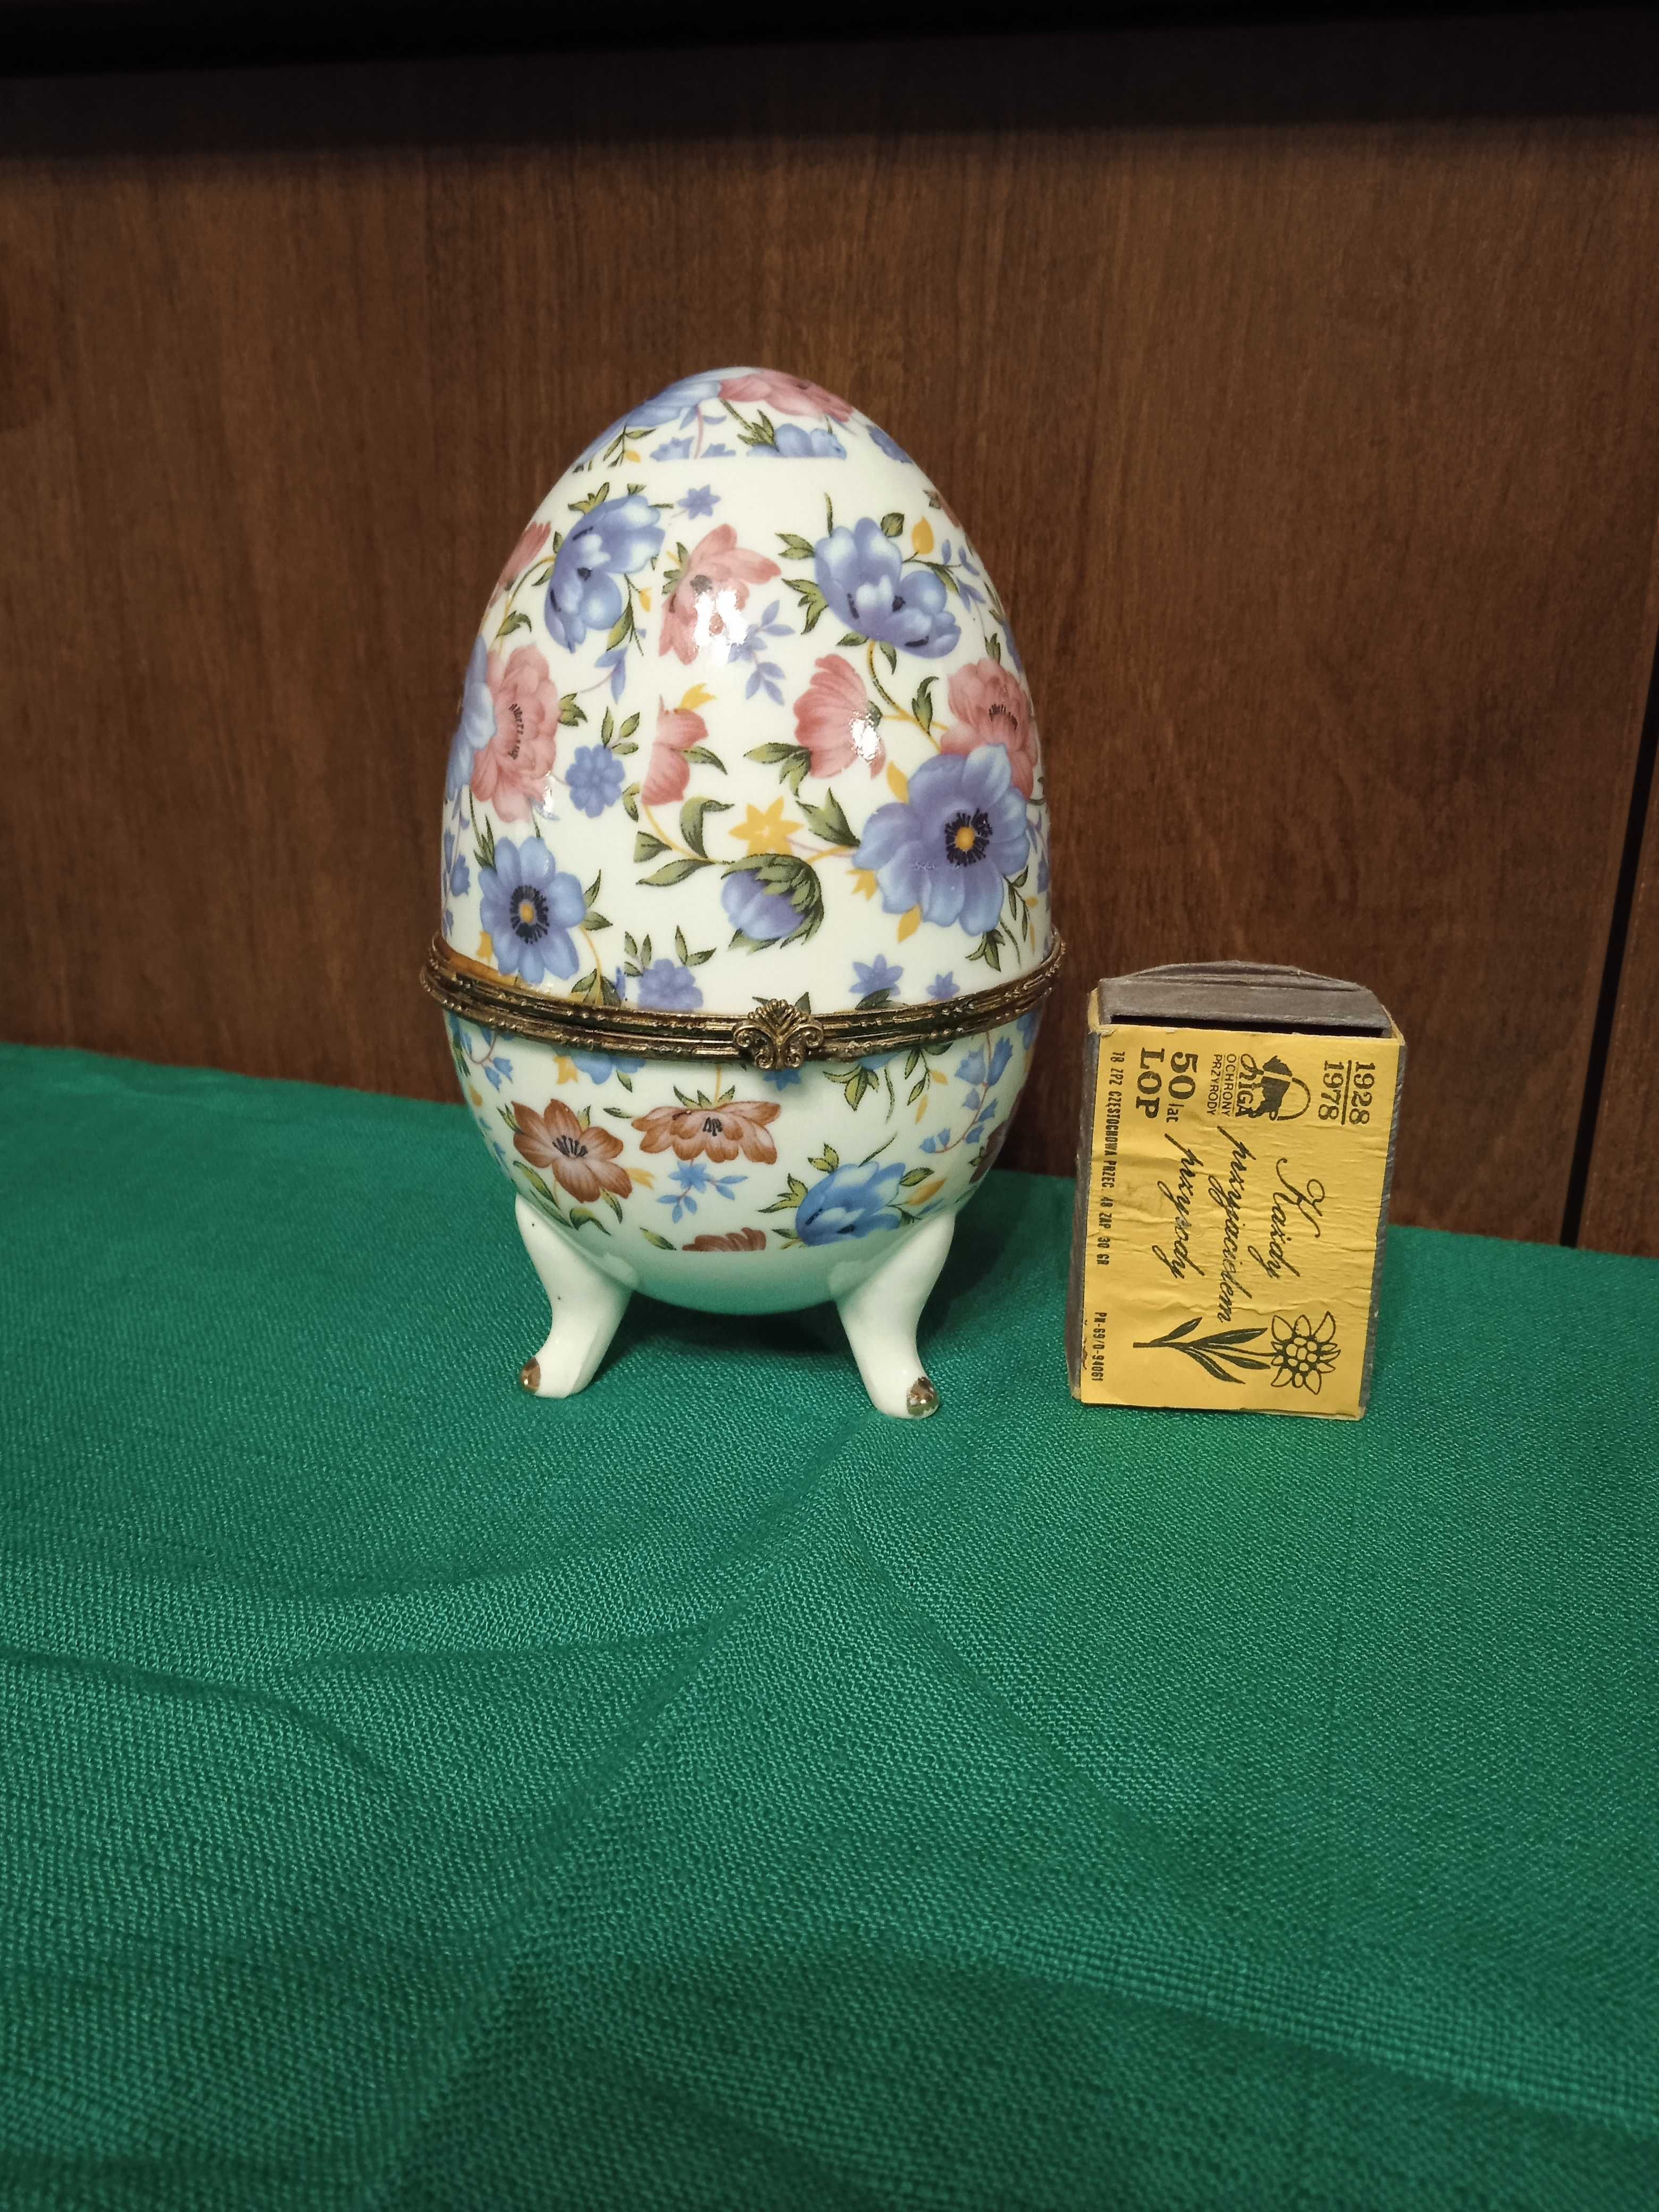 JAJO jajko otwierane kolekcjonerskie porcelana wysokość ok. 12 cm.